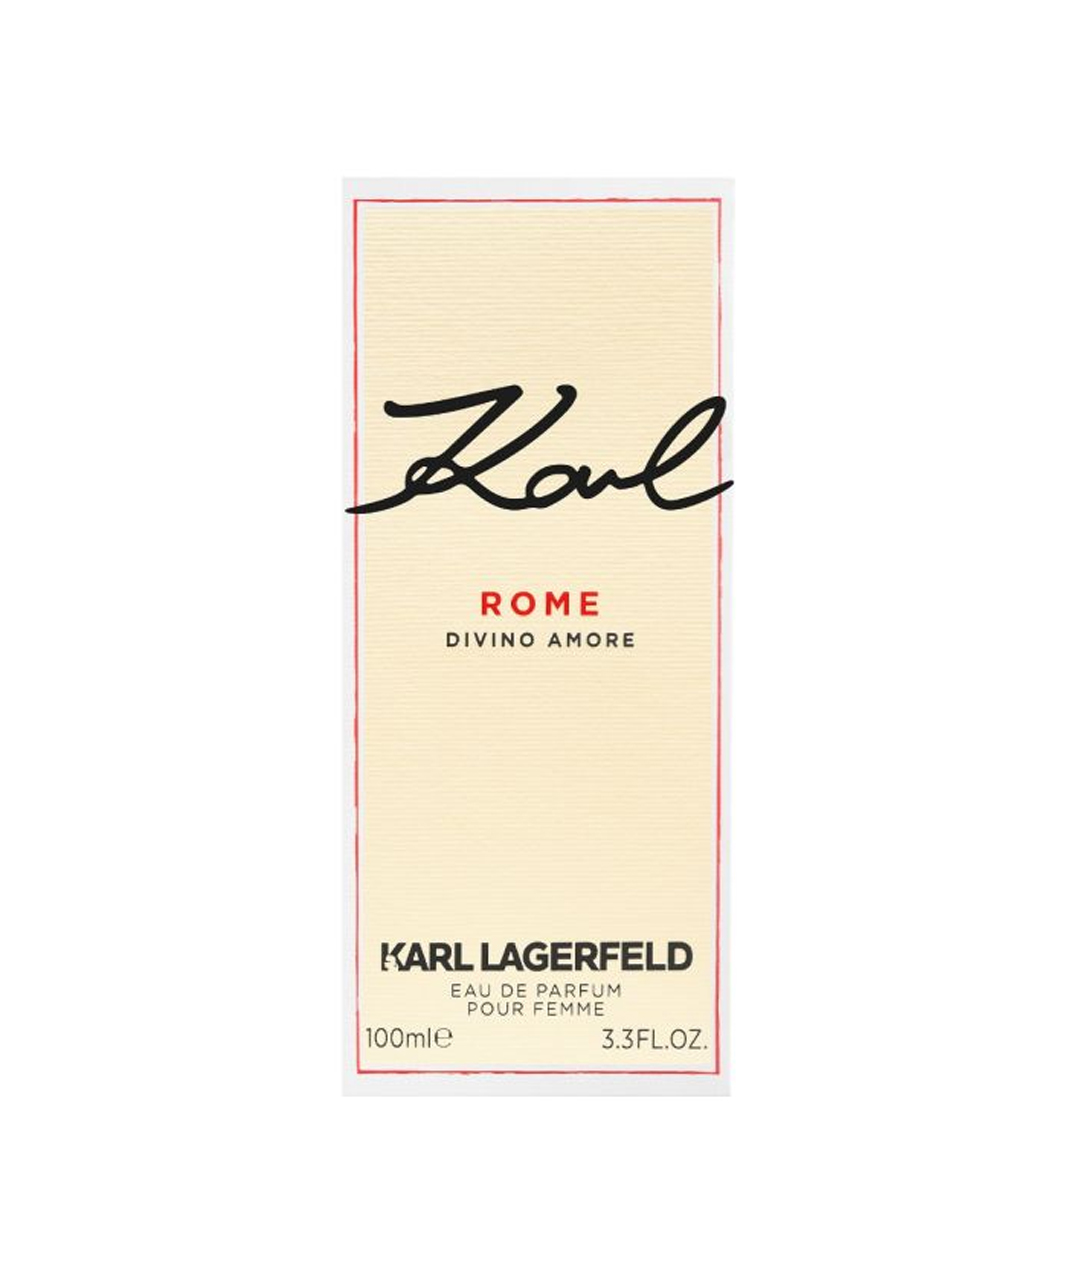 Օծանելիք «Karl Lagerfeld» Divino Amore Rome, կանացի, 100 մլ